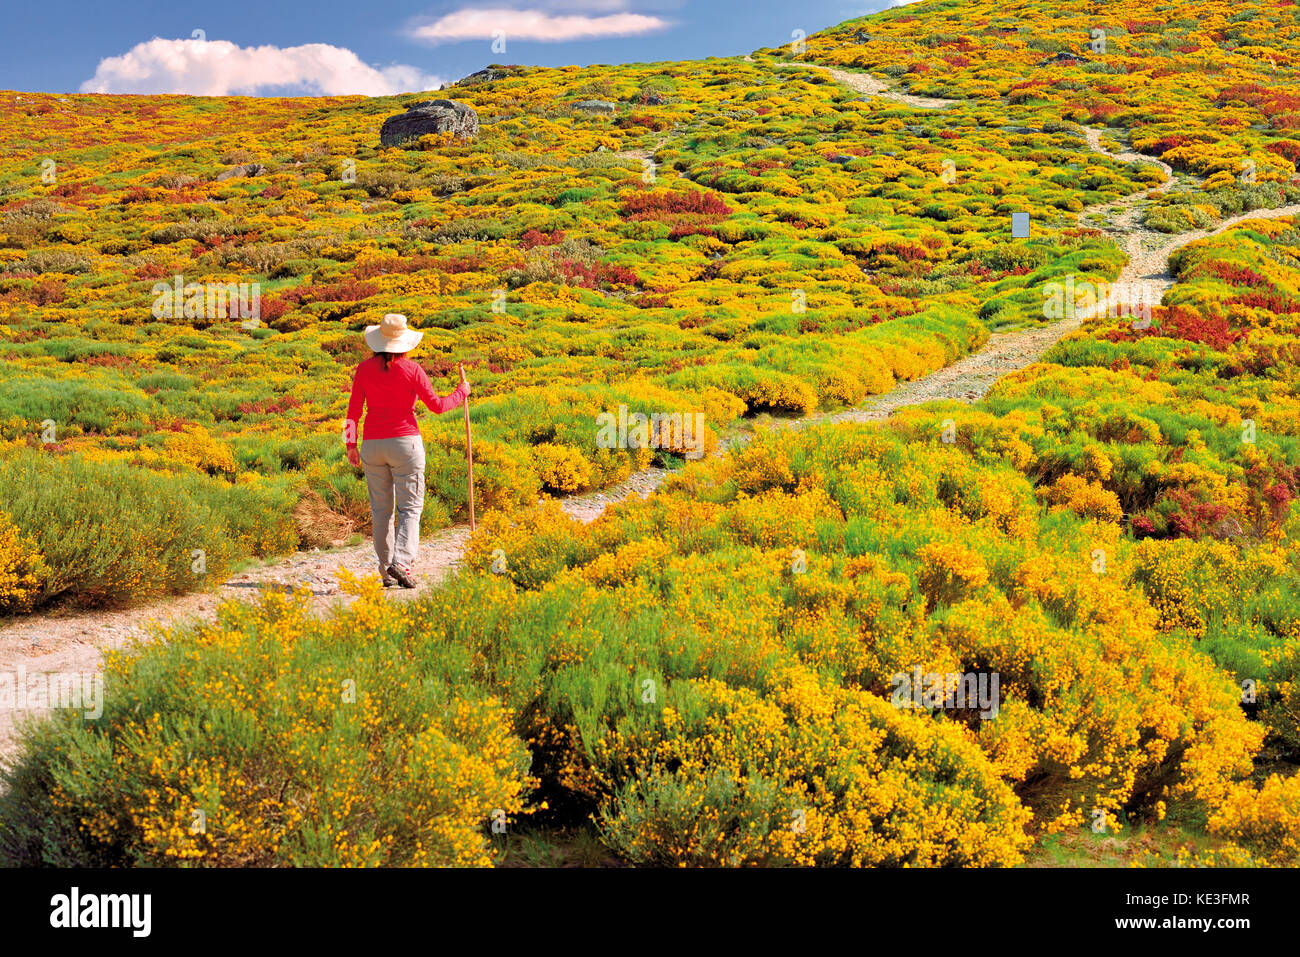 Femme avec chapeau et t-shirt rouge marchant au milieu de la végétation de montagne à floraison jaune et des buissons Banque D'Images